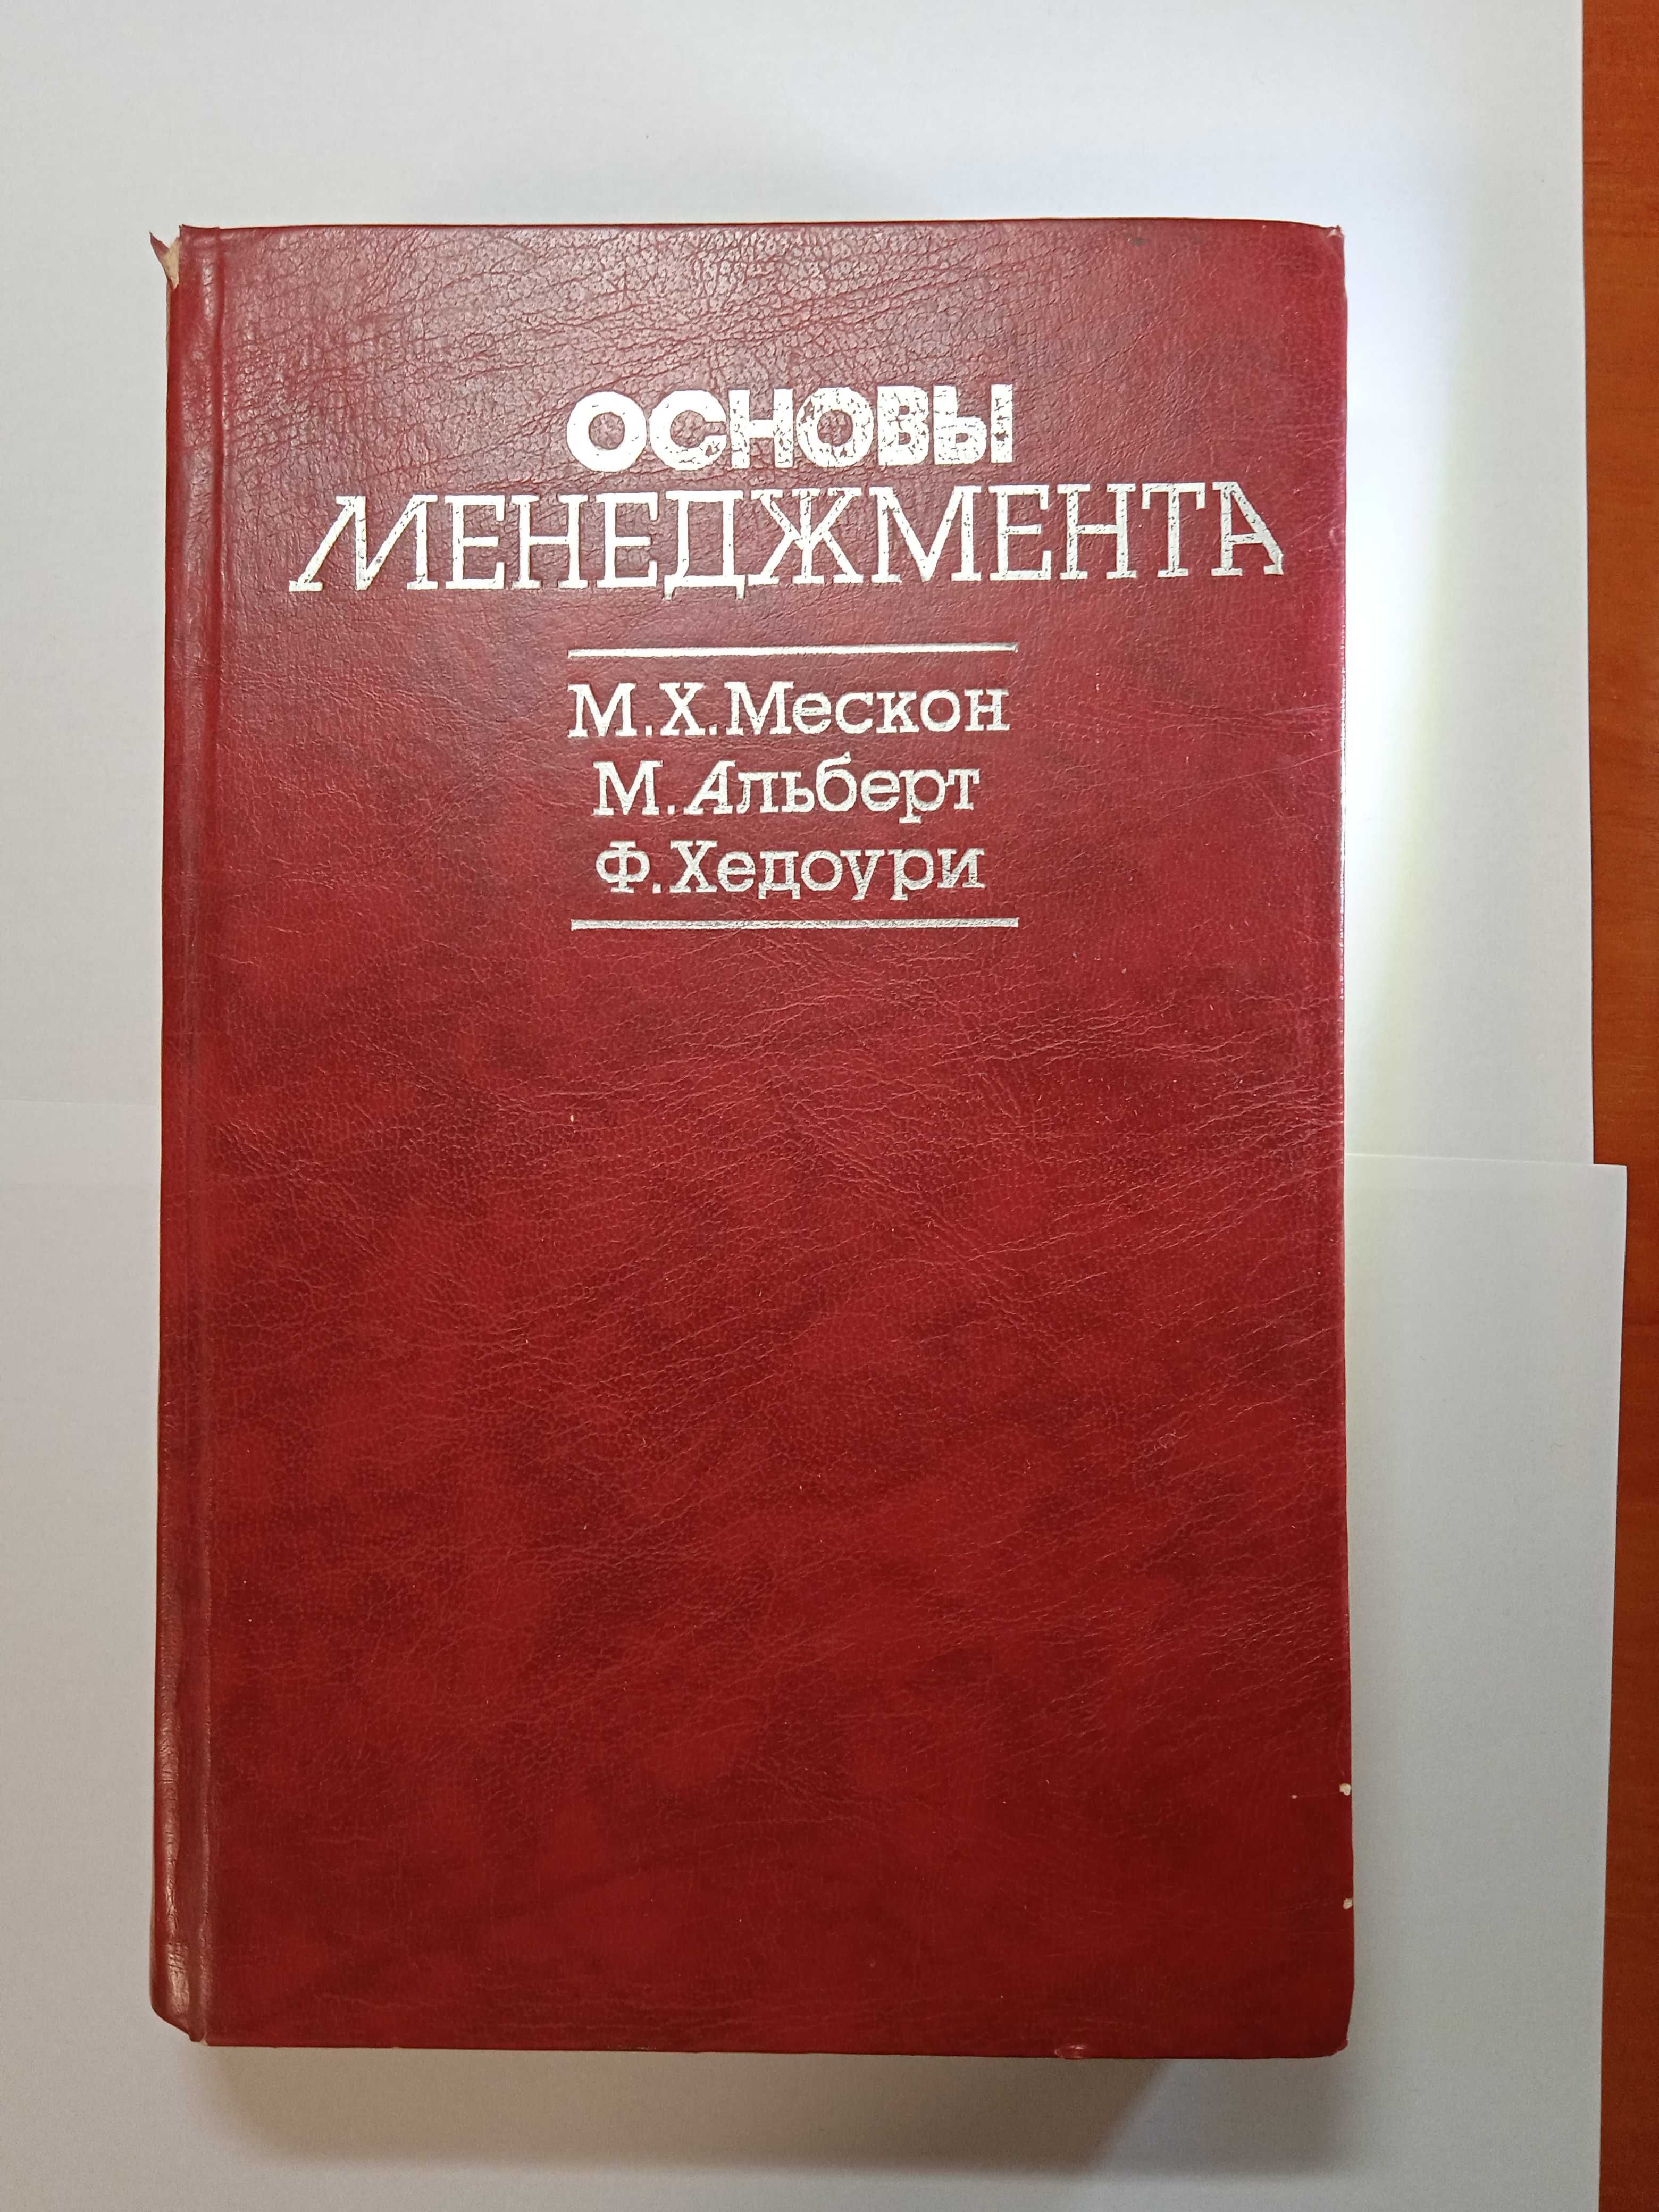 Книга "Основы менеджмента" в соавторстве Мескон М.Х. и др.